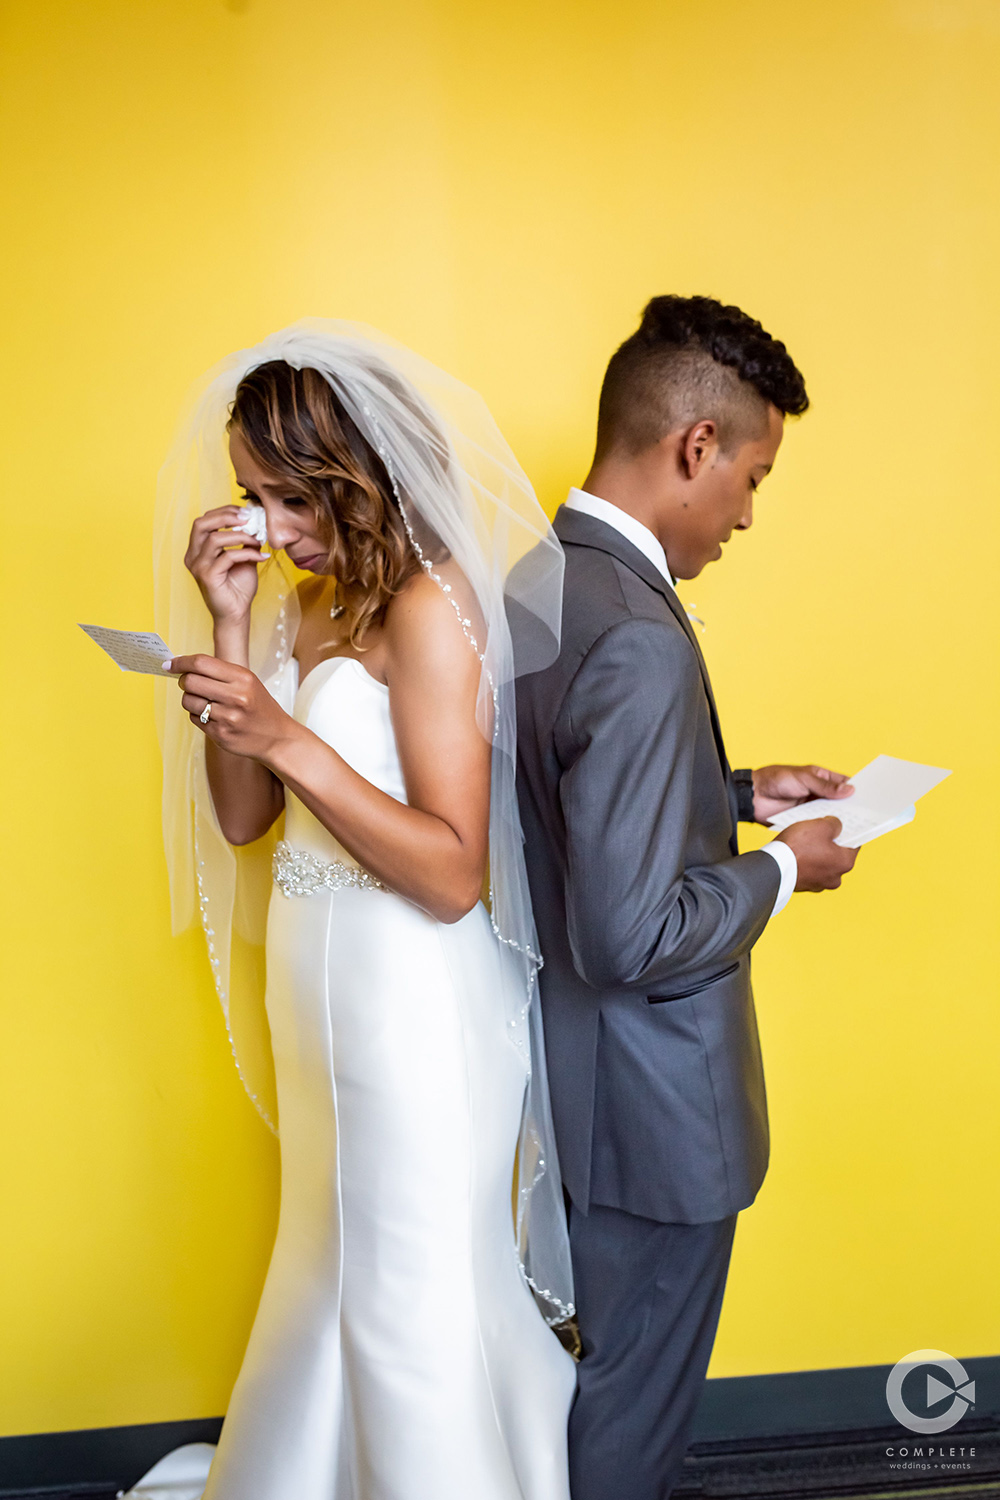 Modern Sleek Wedding Dress